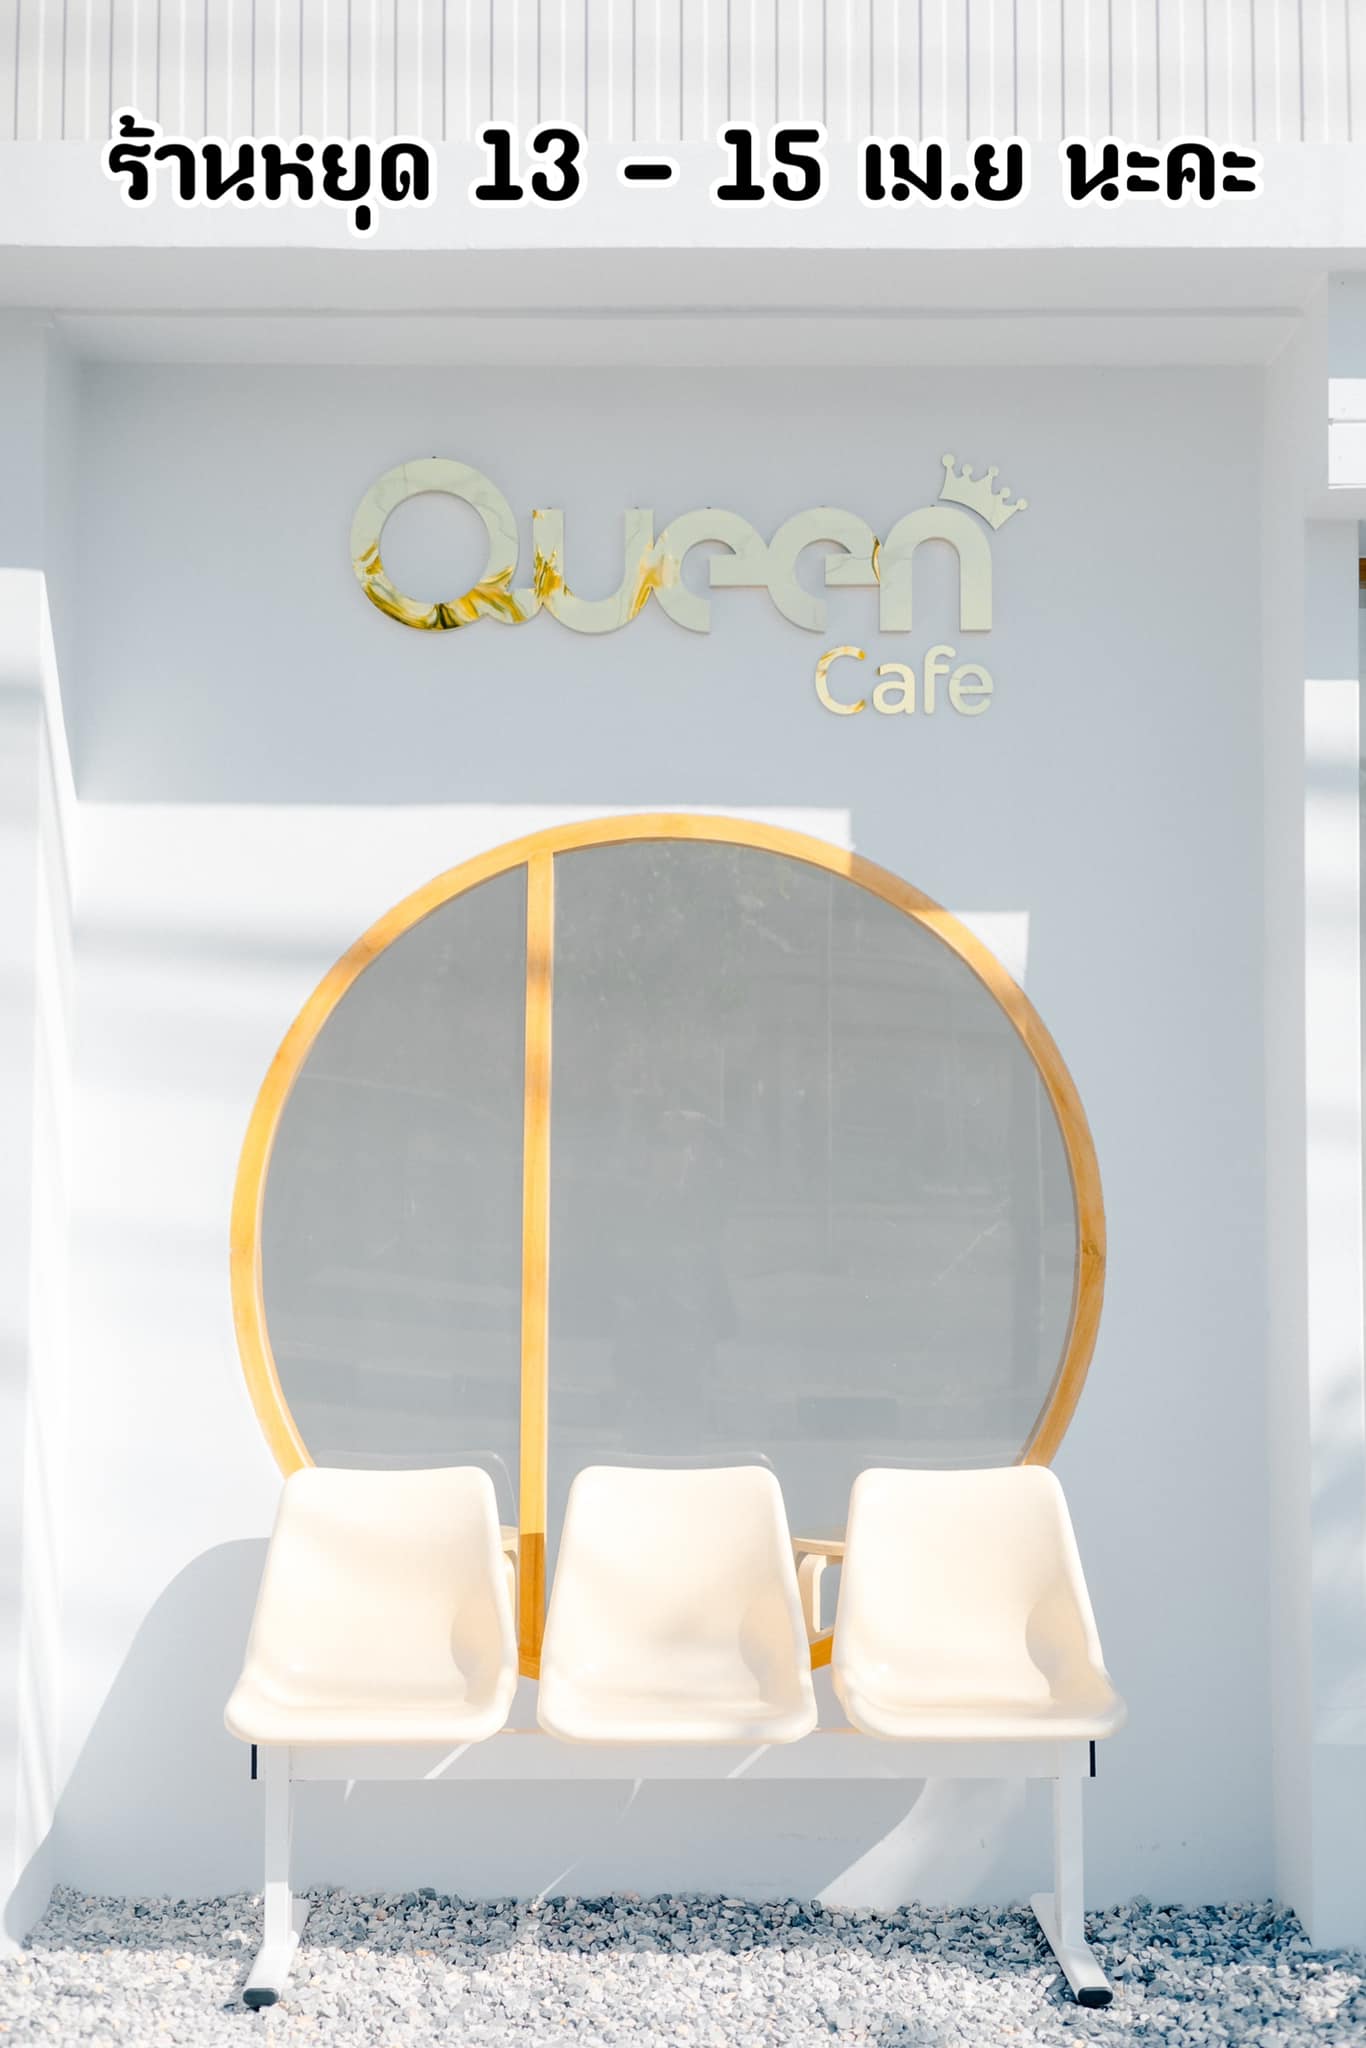 Queen Cafe Khonkaen ร้านกาแฟ